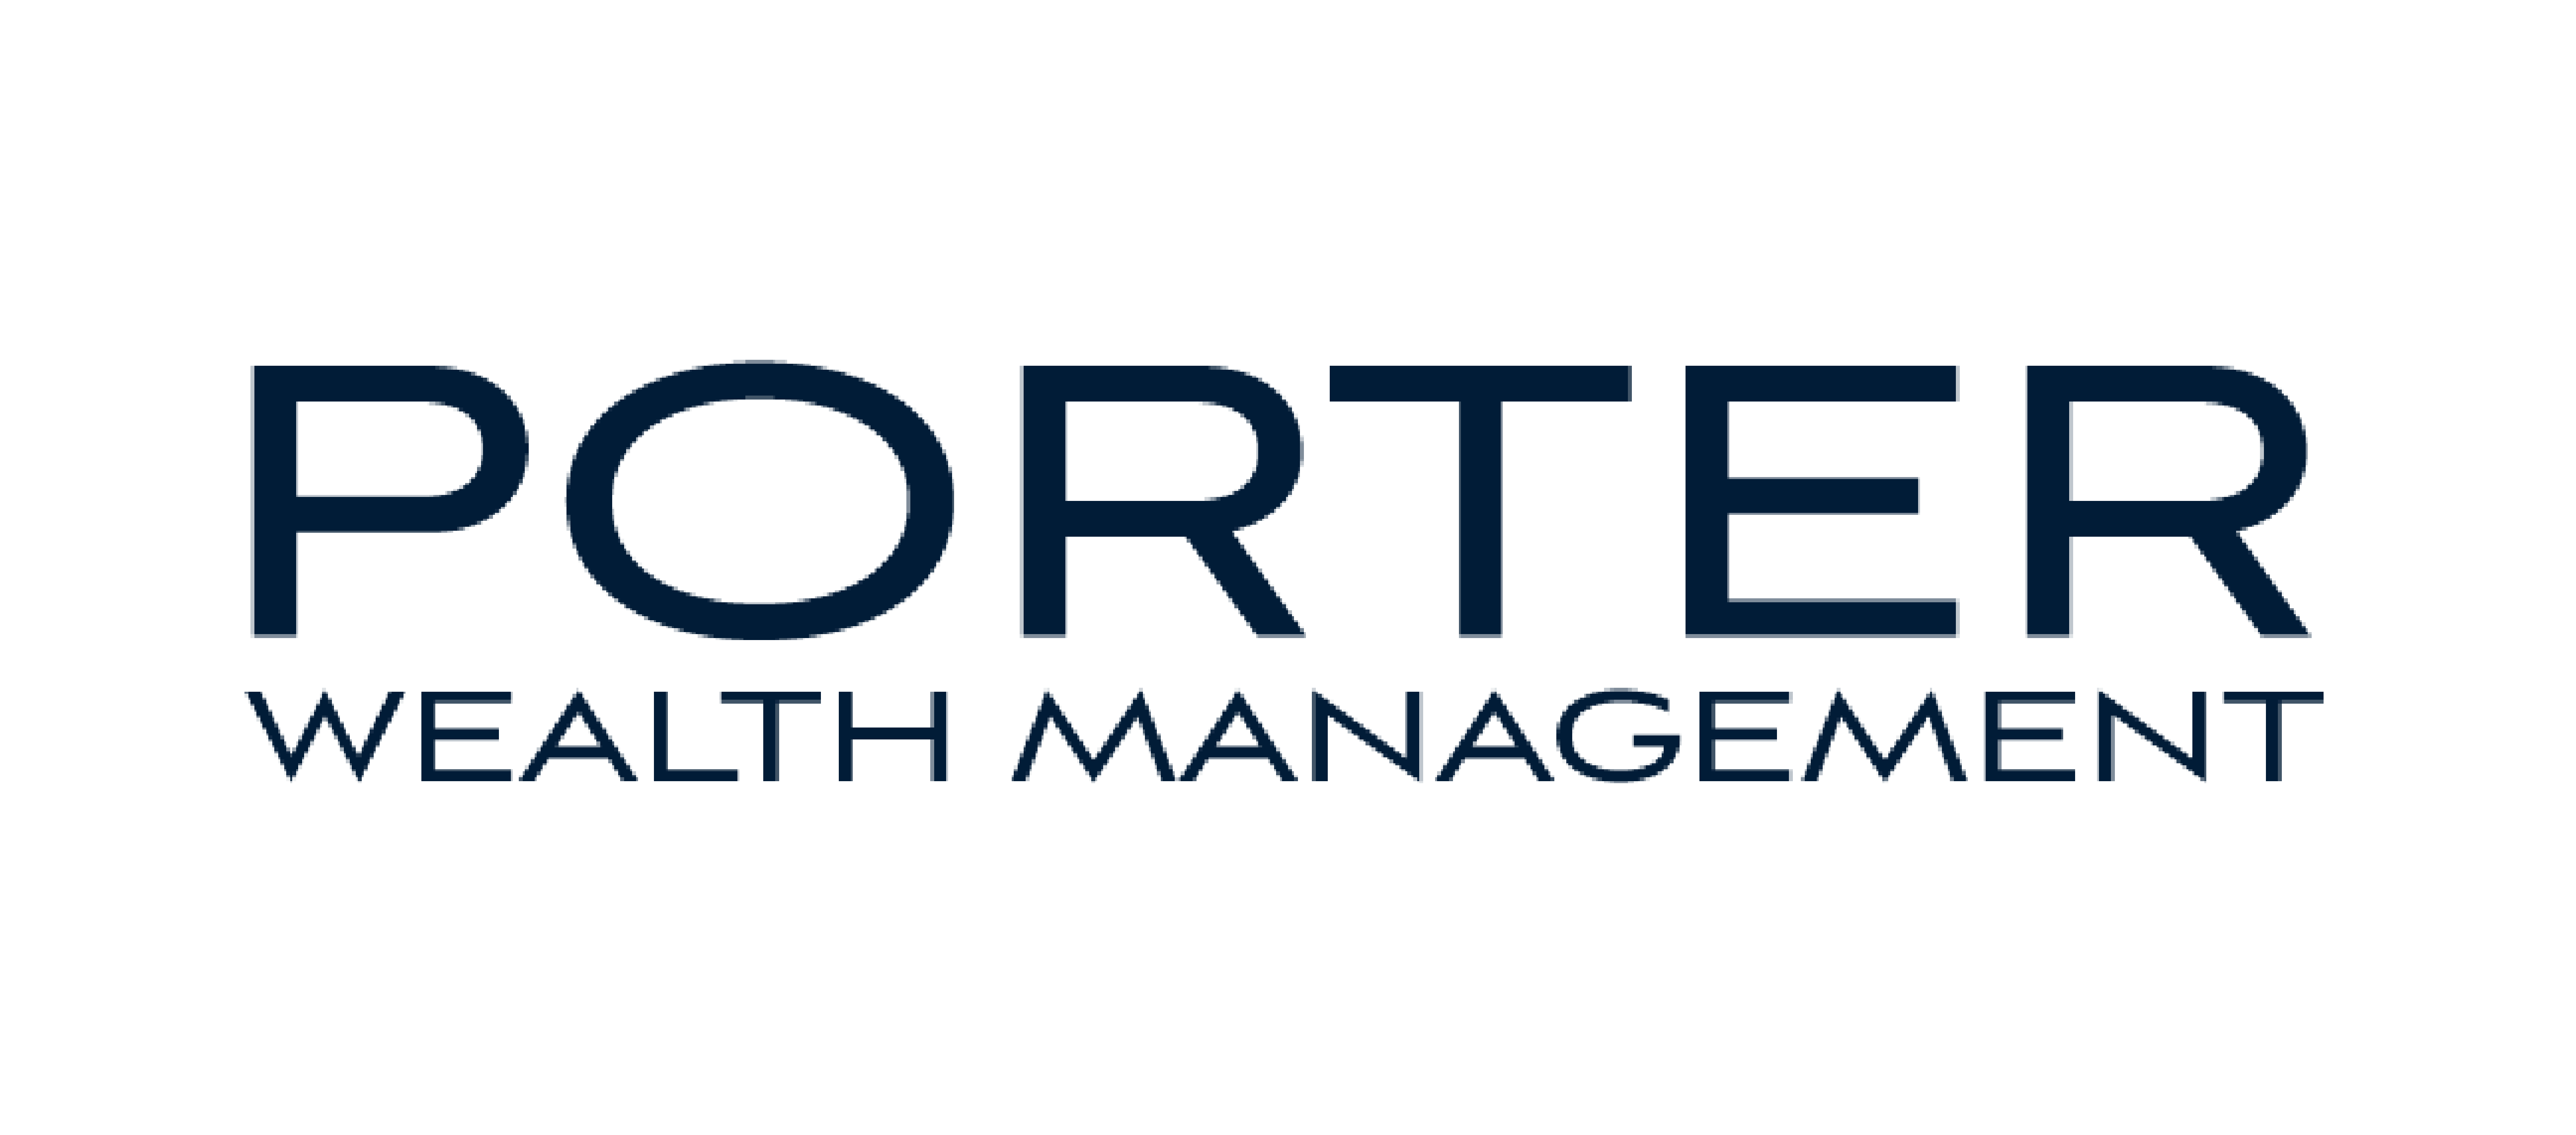 Porter Wealth Management, LLC